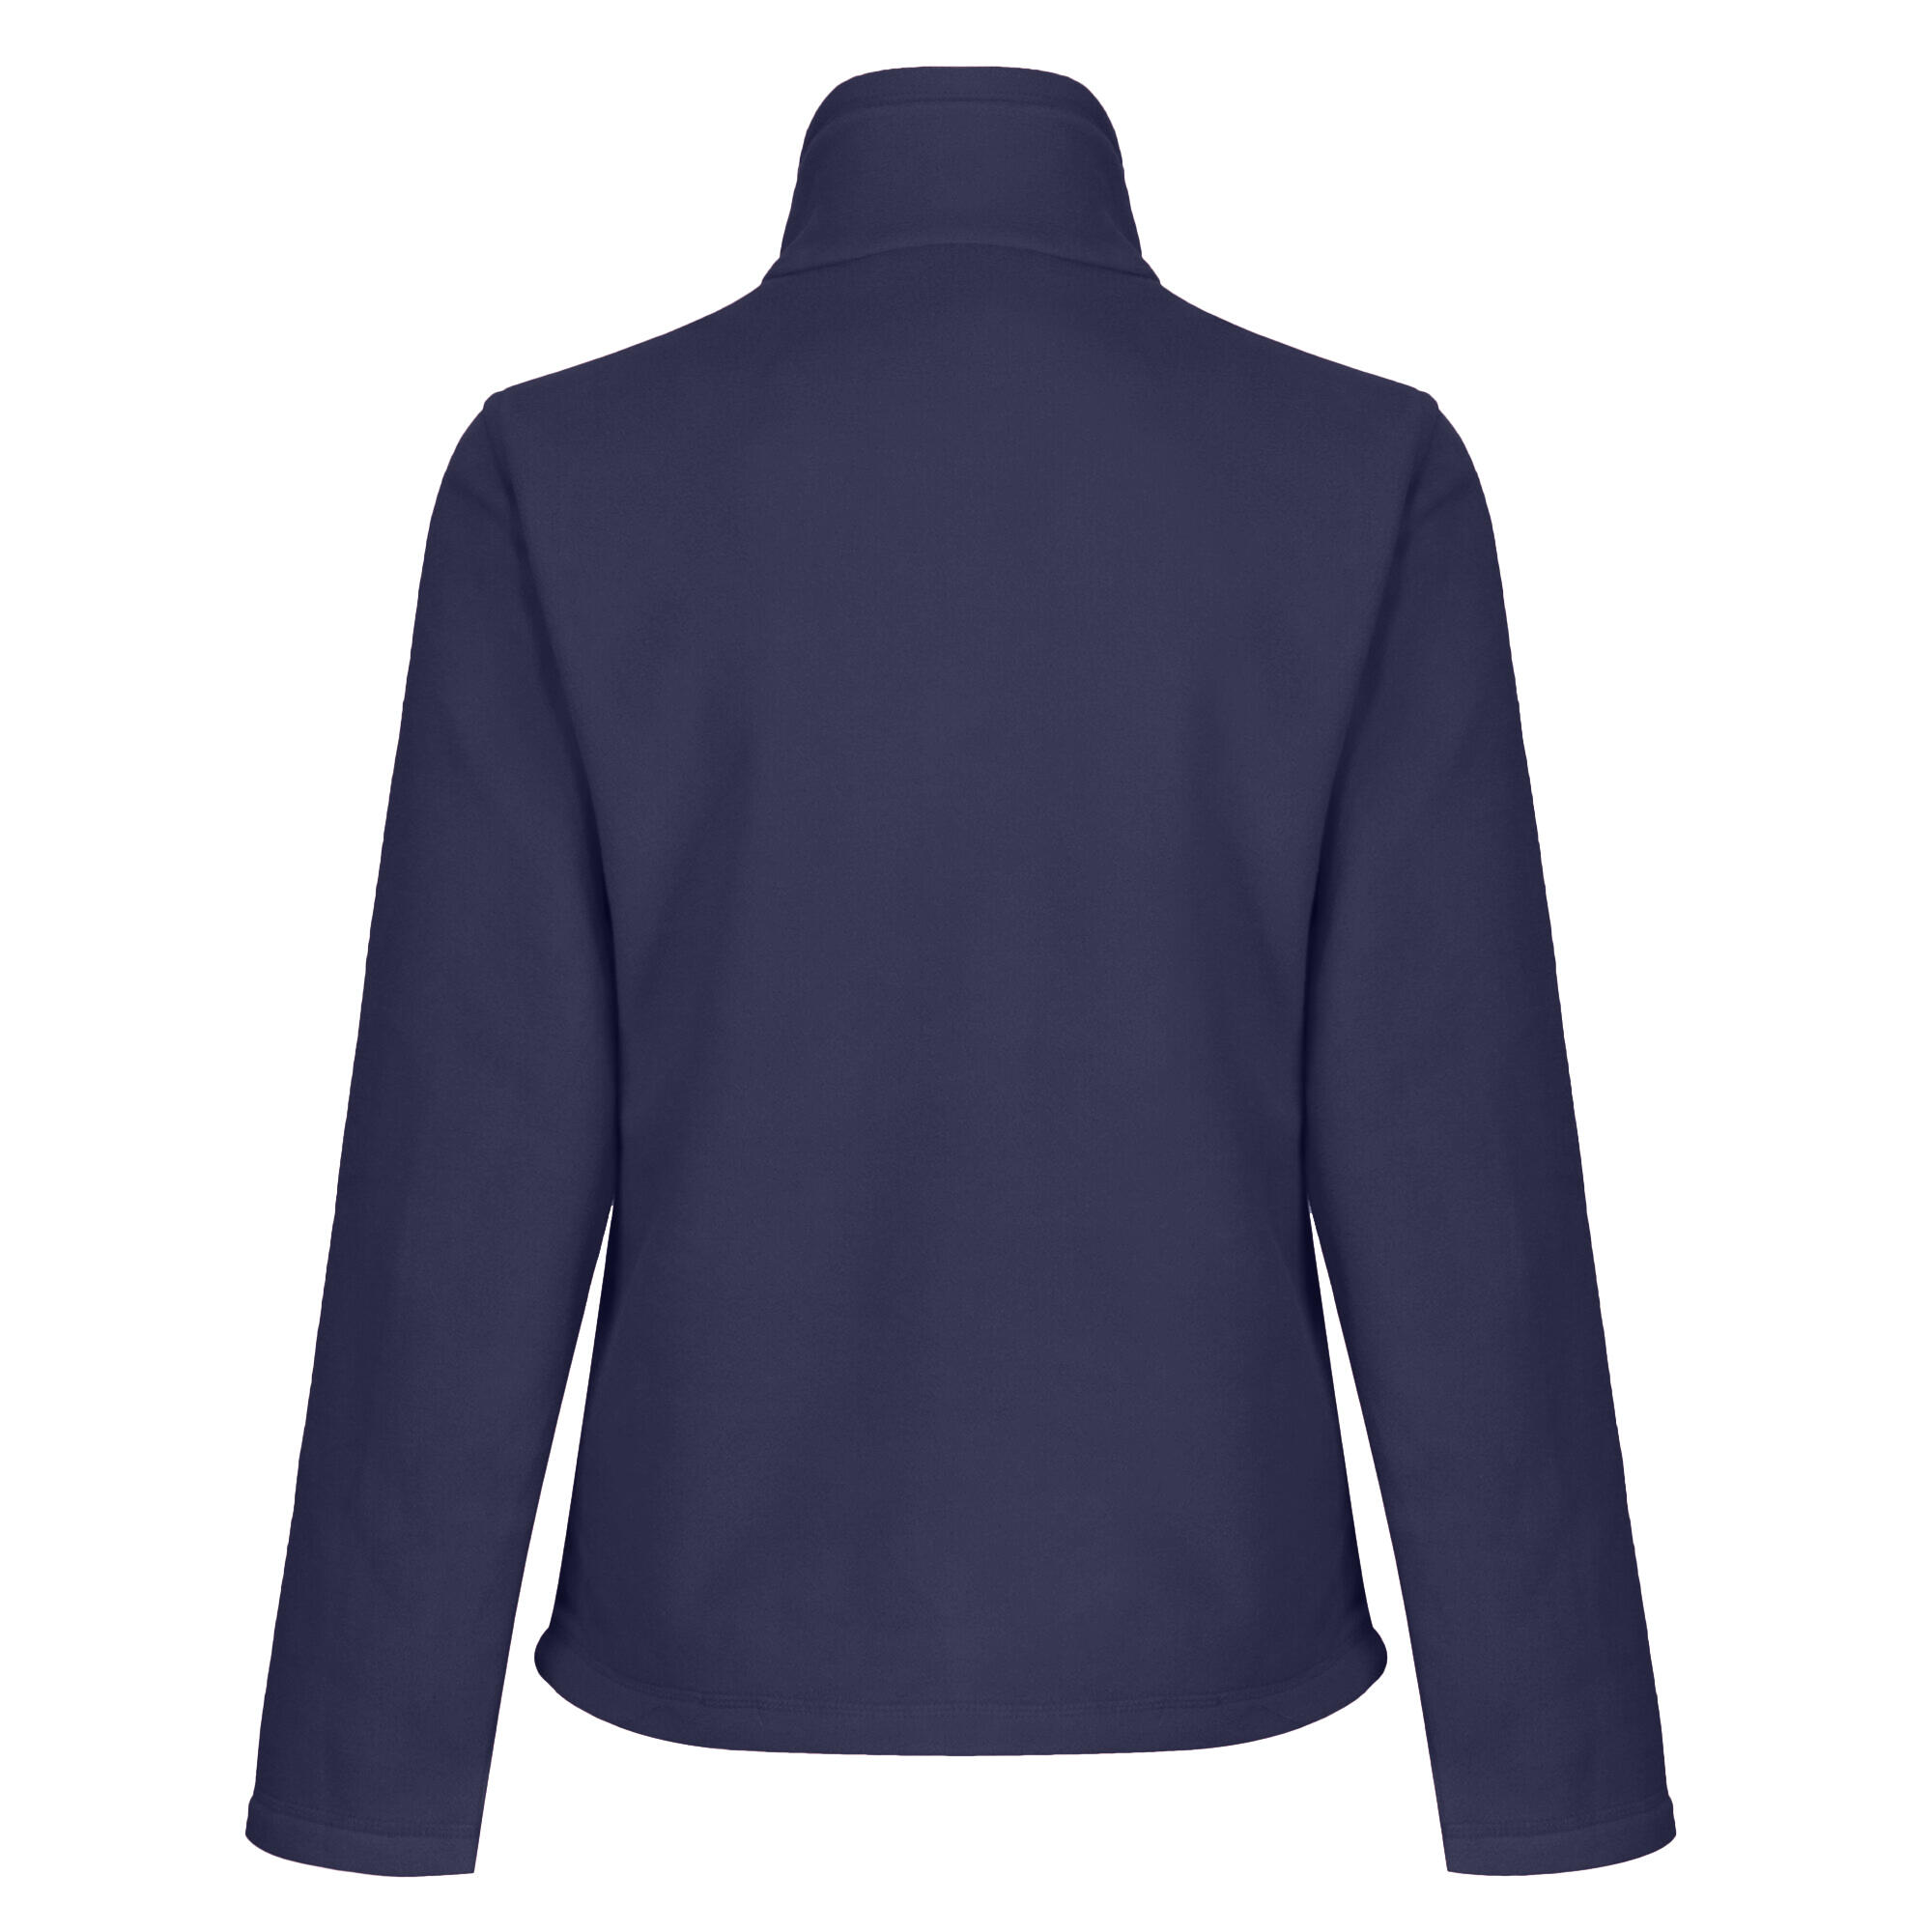 Womens/Ladies FullZip 210 Series Microfleece Jacket (Dark Navy) 2/5